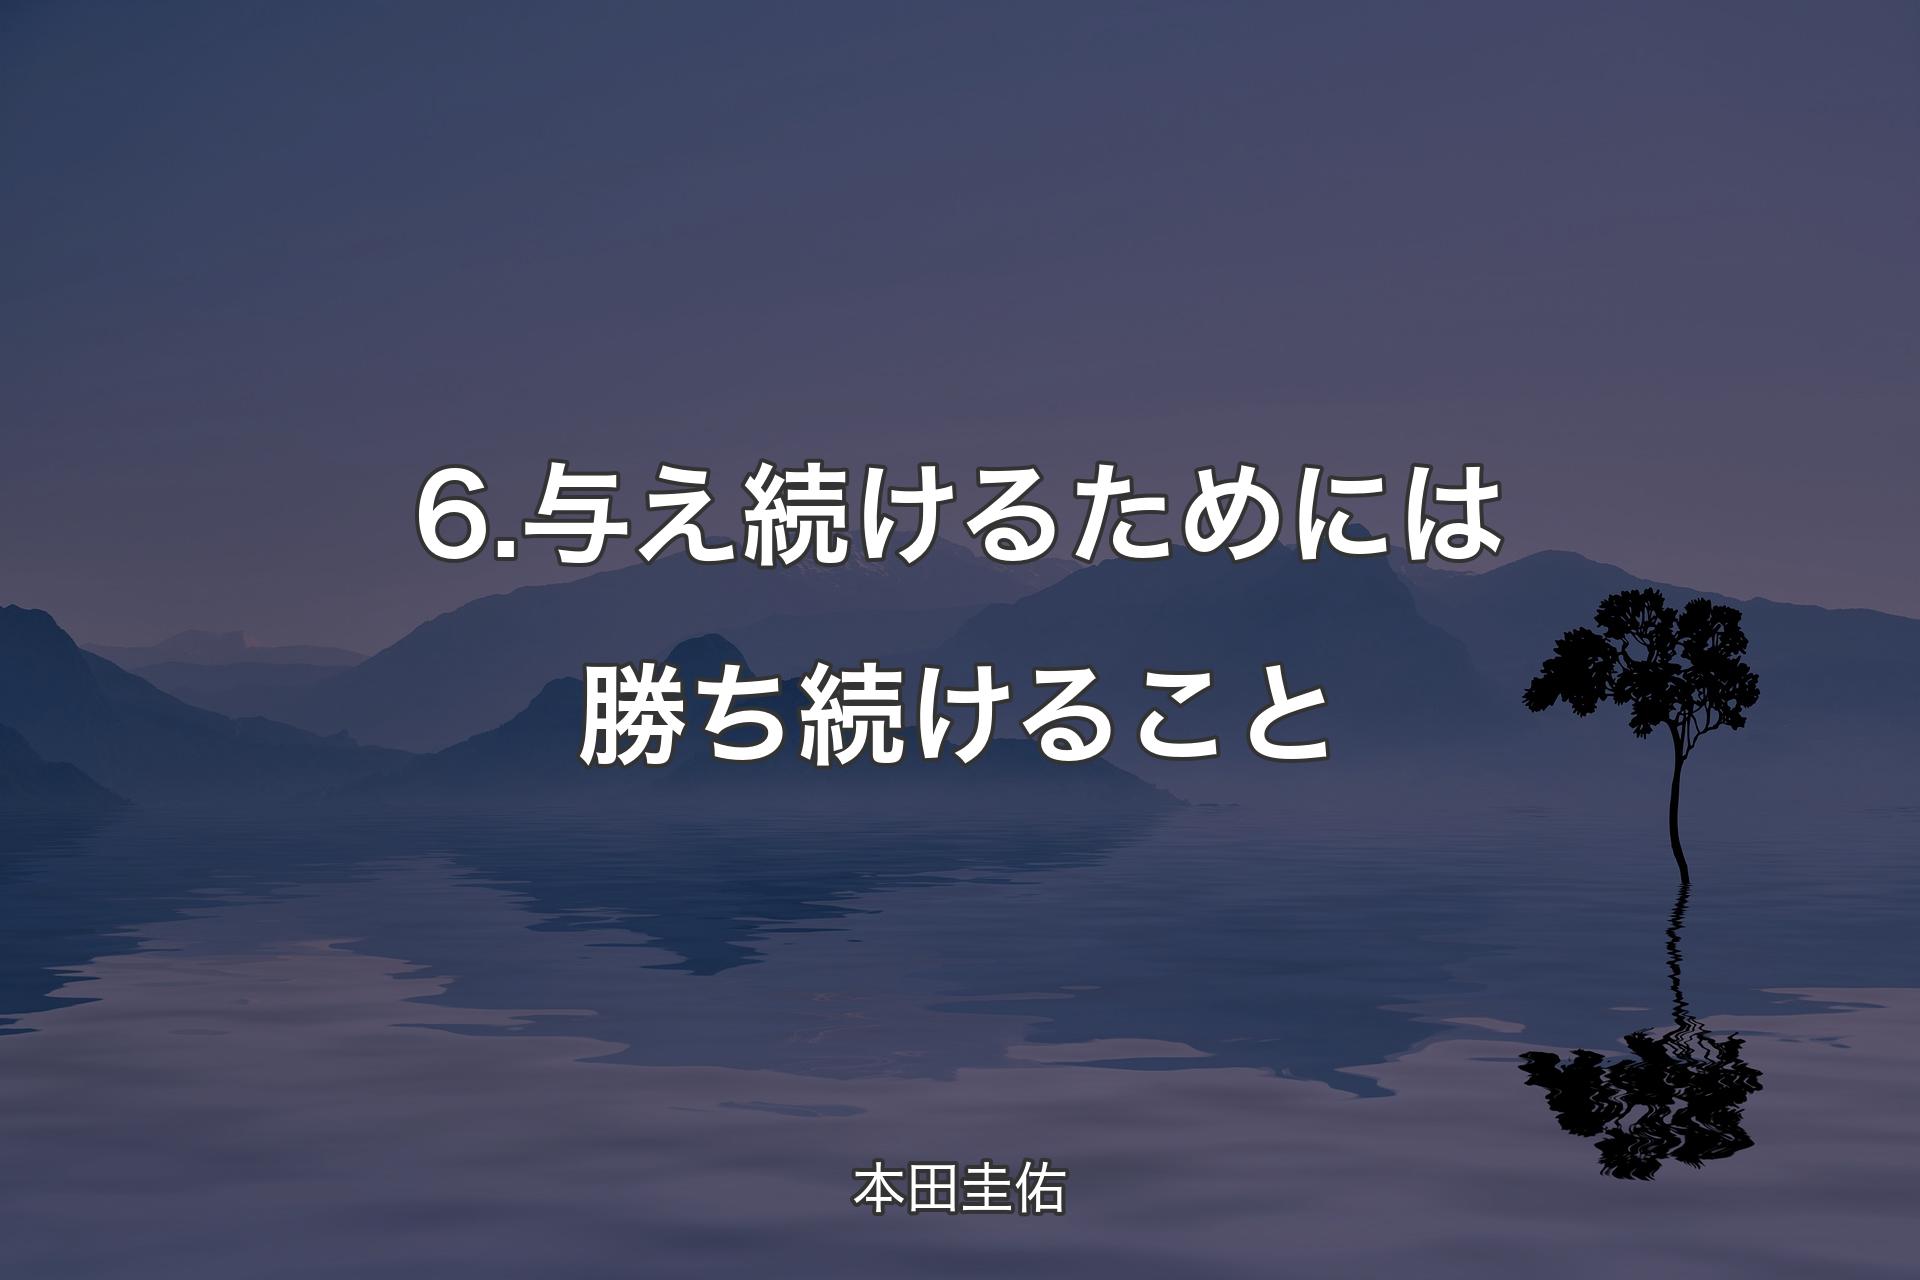 【背景4】6.与え続けるためには勝ち続けること - 本田圭佑